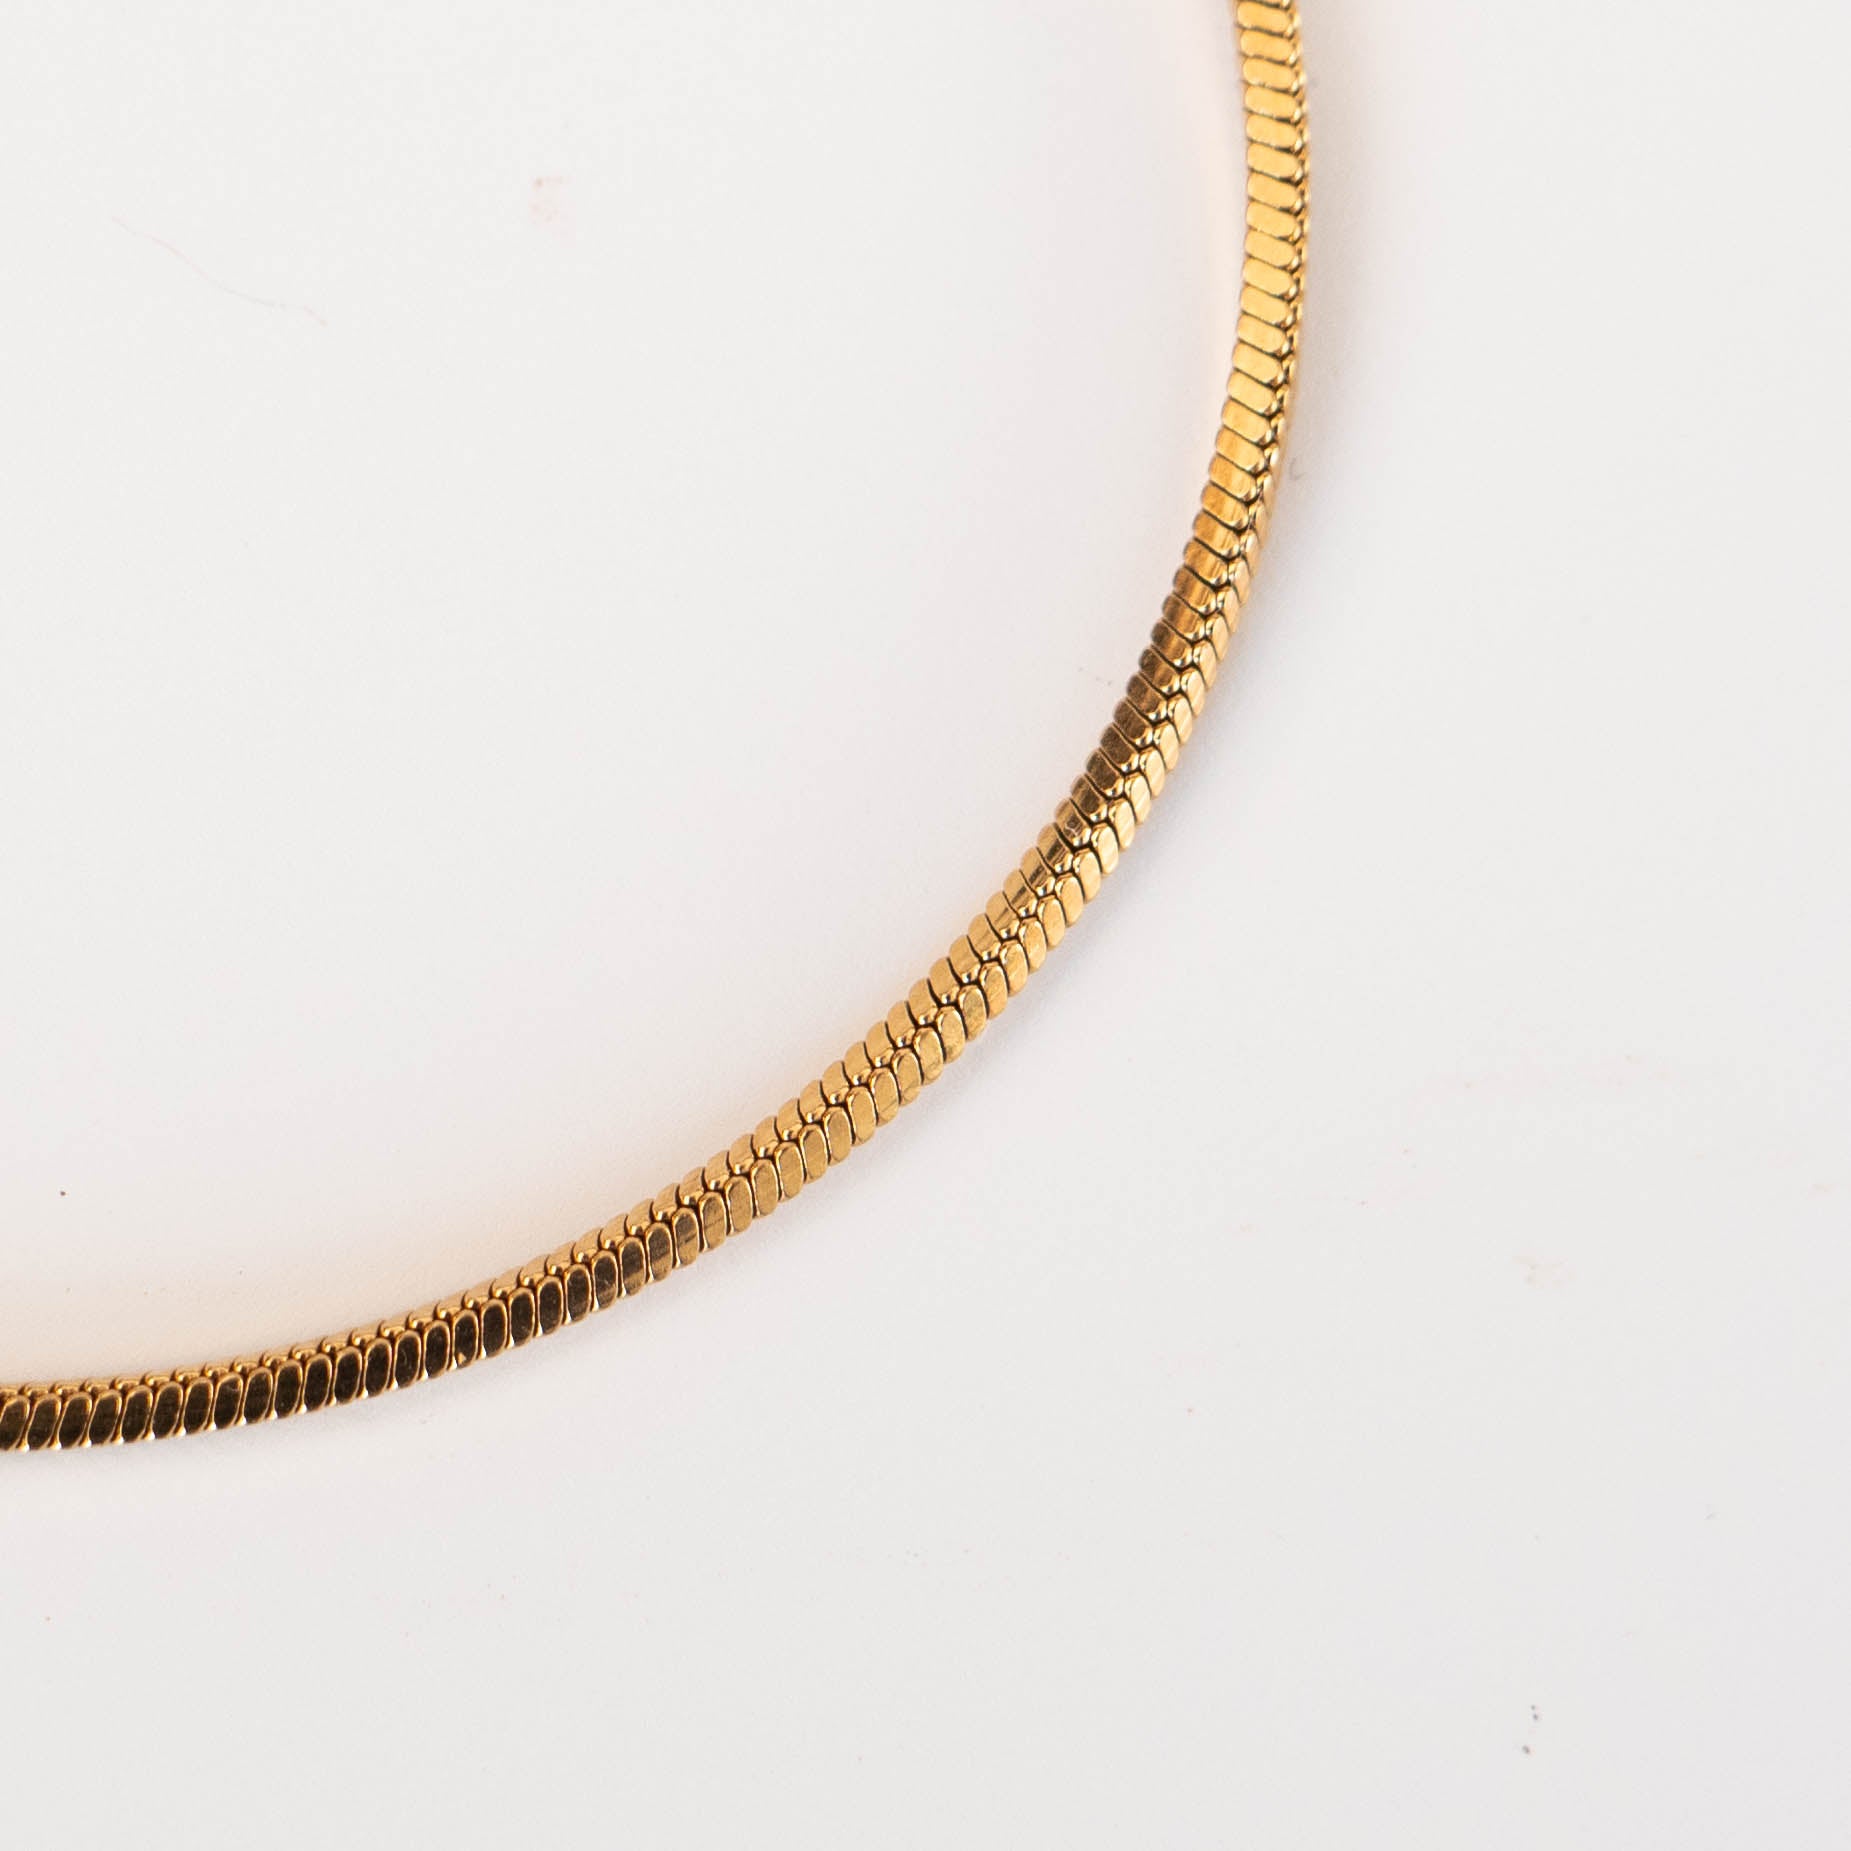 Potosi armband 1mm (goud) - www.mundobracelets.com